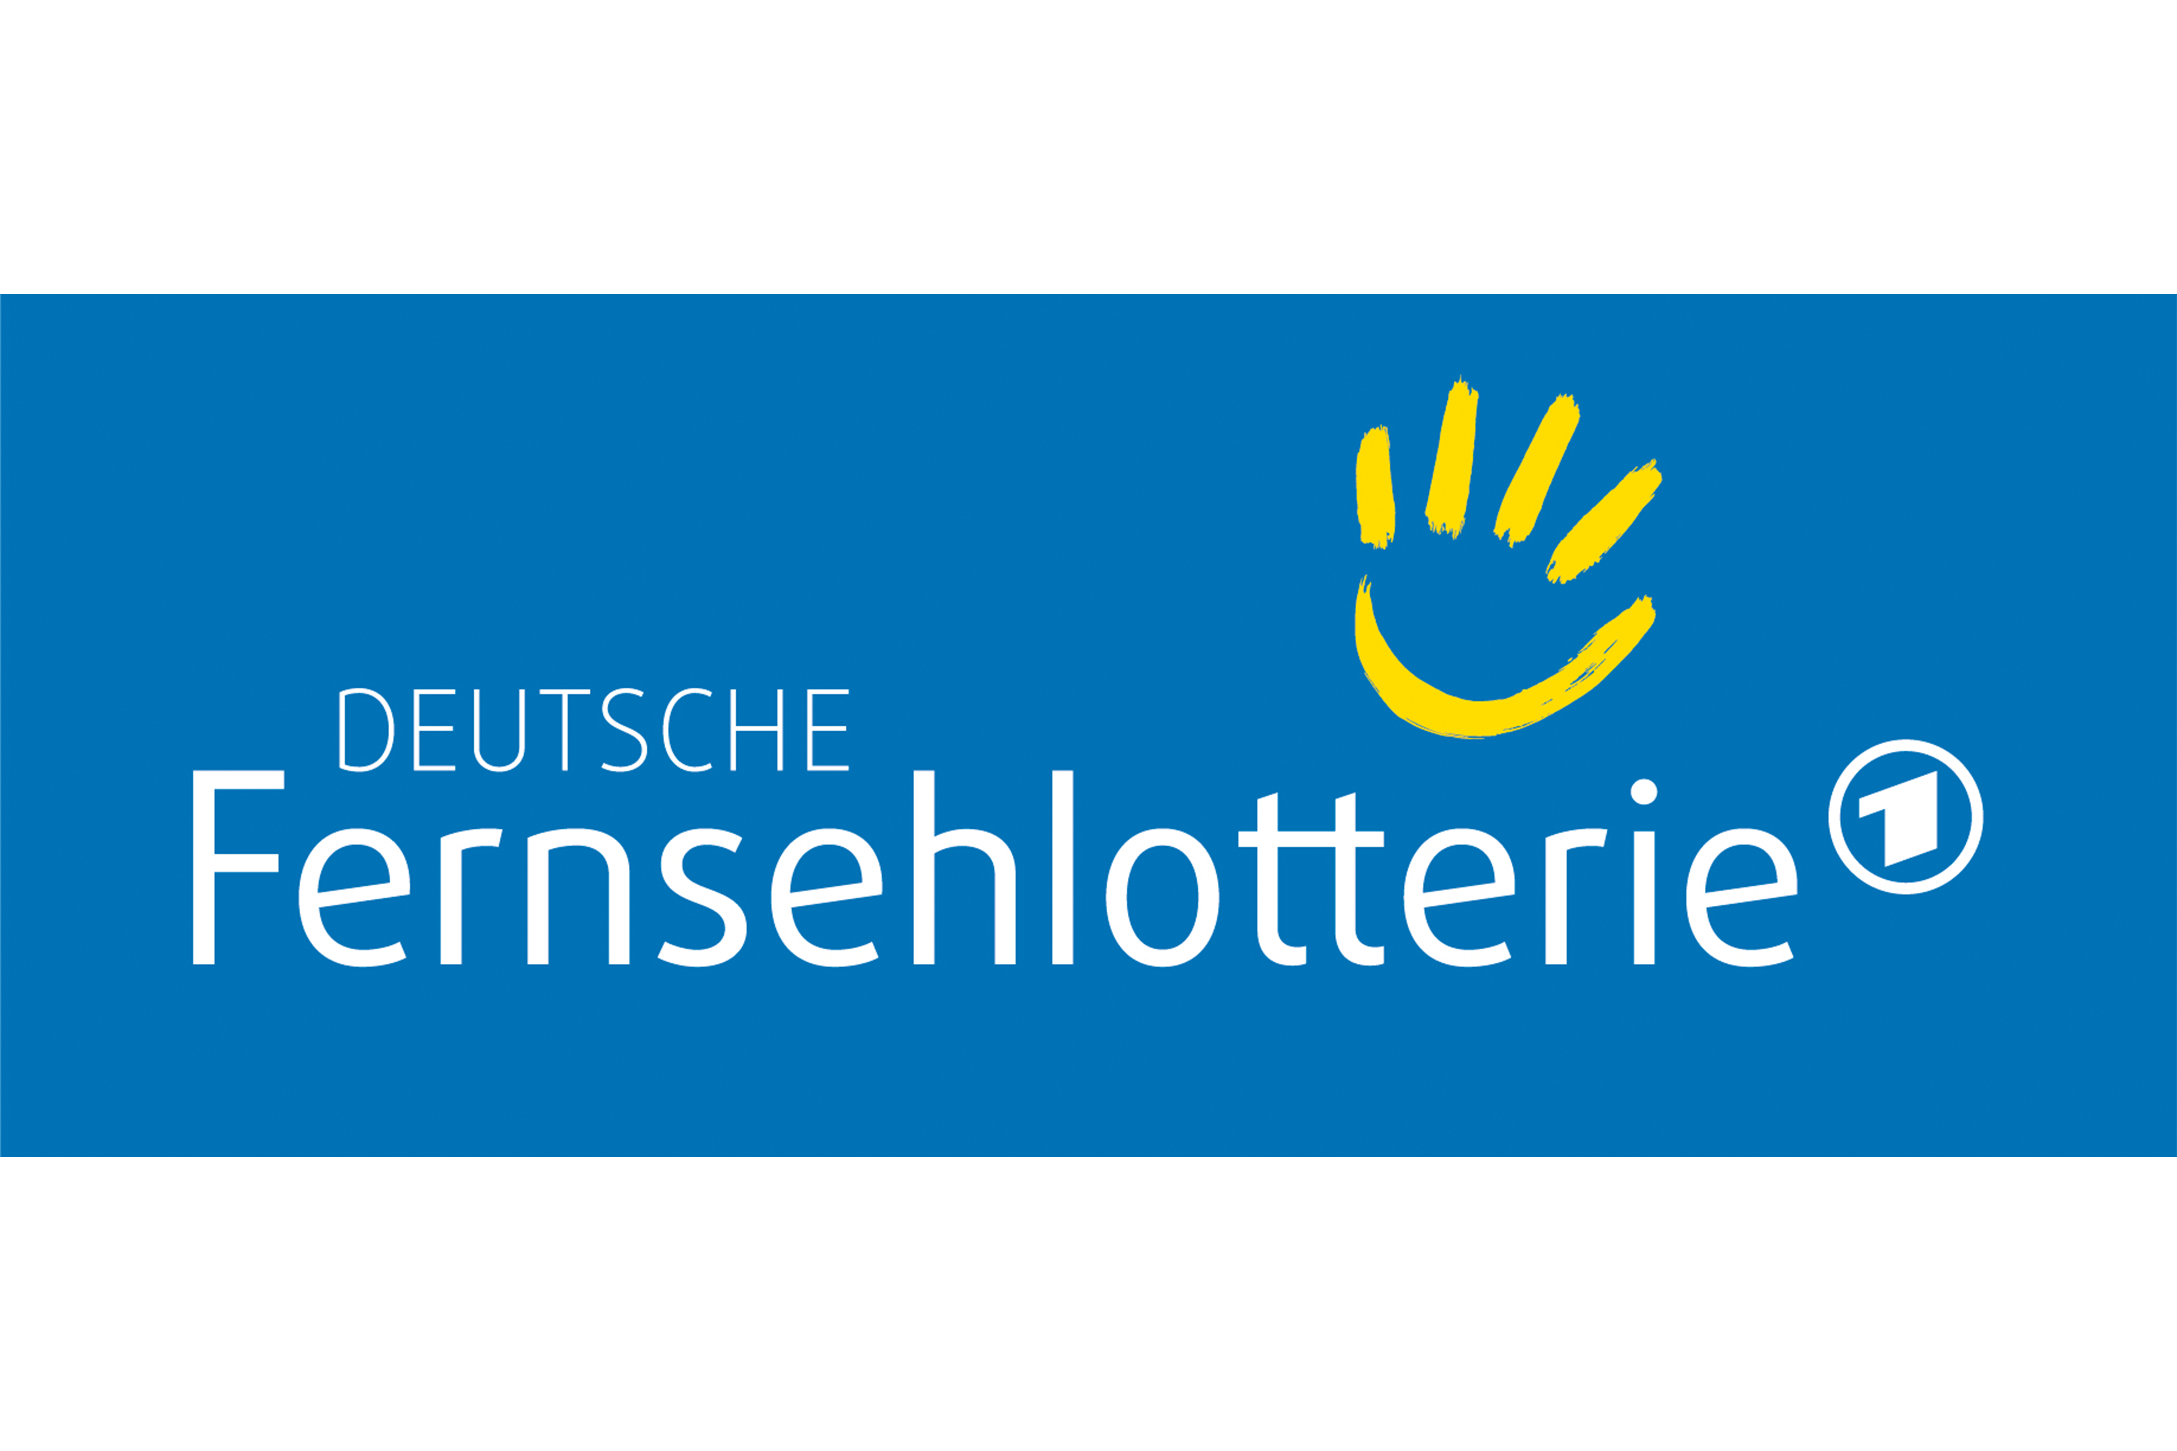 Logo Fernsehlotterie